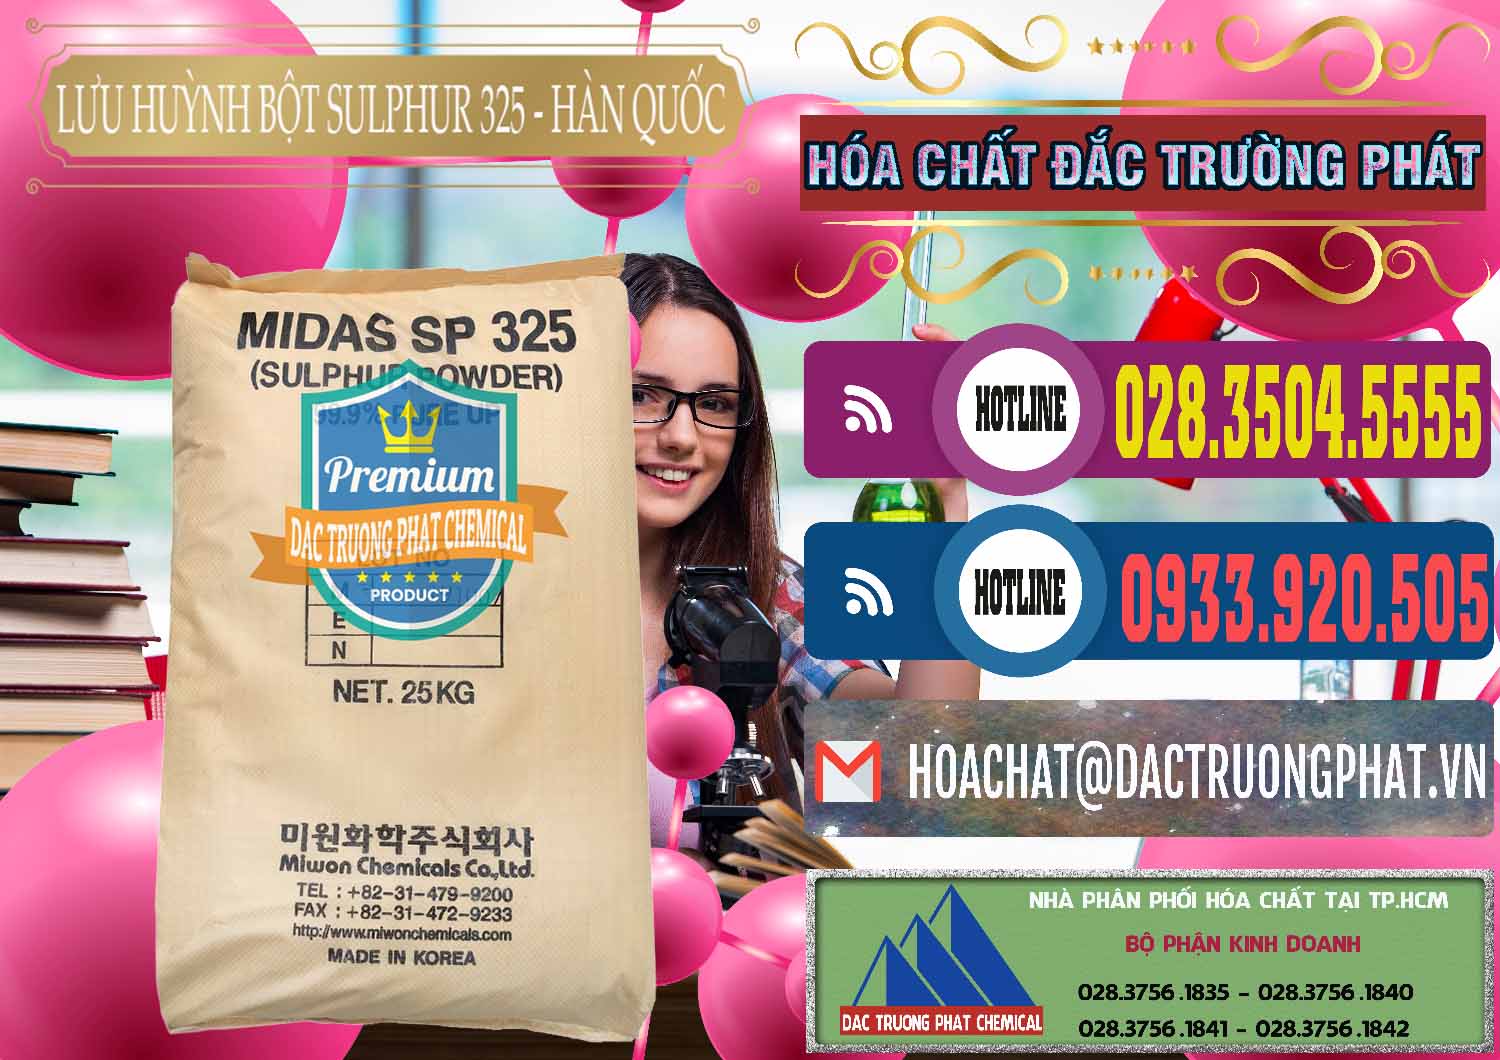 Cty chuyên cung cấp và bán Lưu huỳnh Bột - Sulfur Powder Midas SP 325 Hàn Quốc Korea - 0198 - Cty bán ( cung cấp ) hóa chất tại TP.HCM - muabanhoachat.com.vn